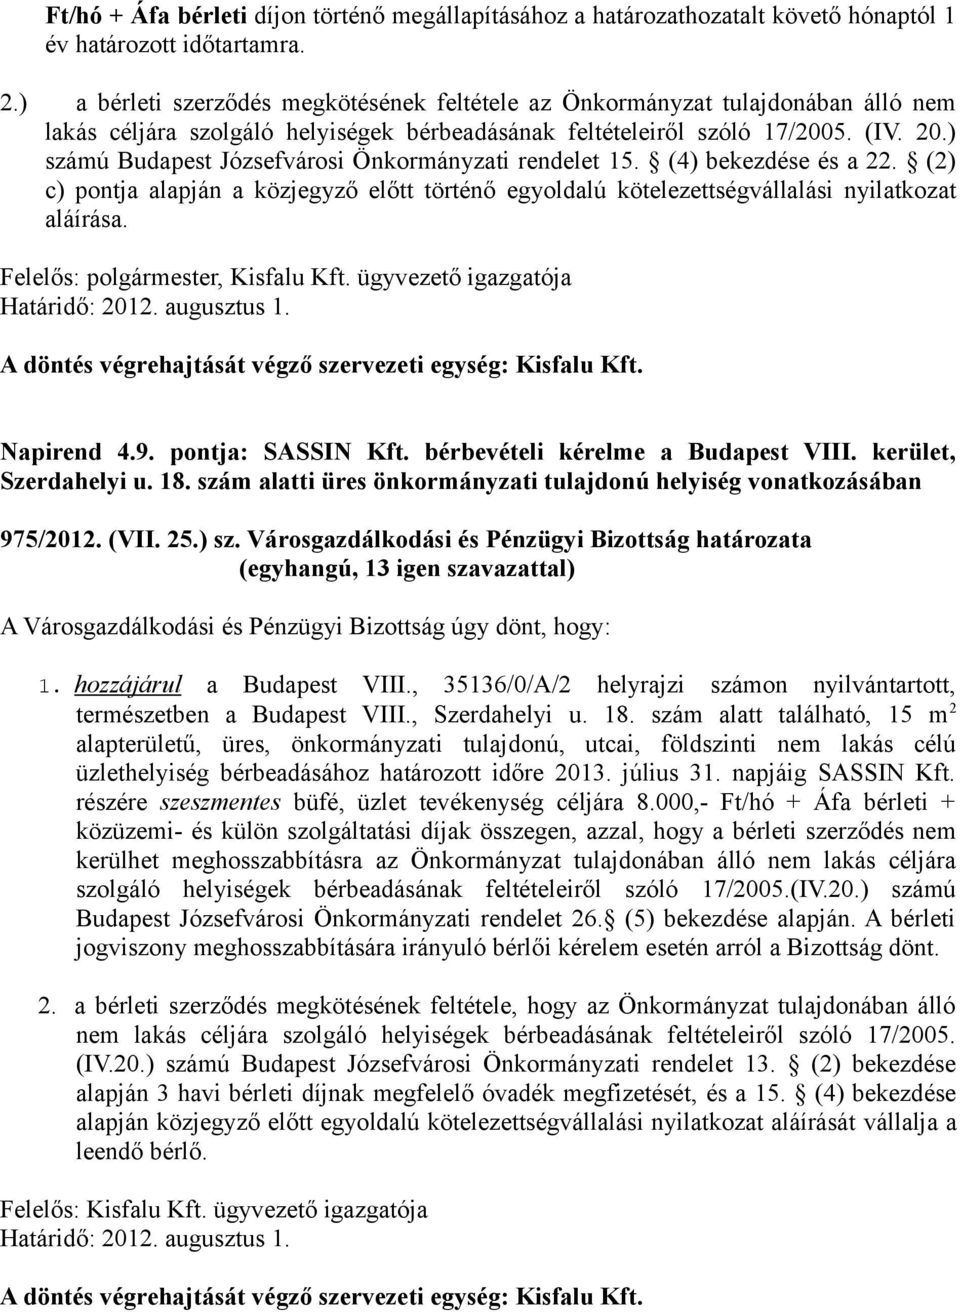 ) számú Budapest Józsefvárosi Önkormányzati rendelet 15. (4) bekezdése és a 22. (2) c) pontja alapján a közjegyző előtt történő egyoldalú kötelezettségvállalási nyilatkozat aláírása., Kisfalu Kft.